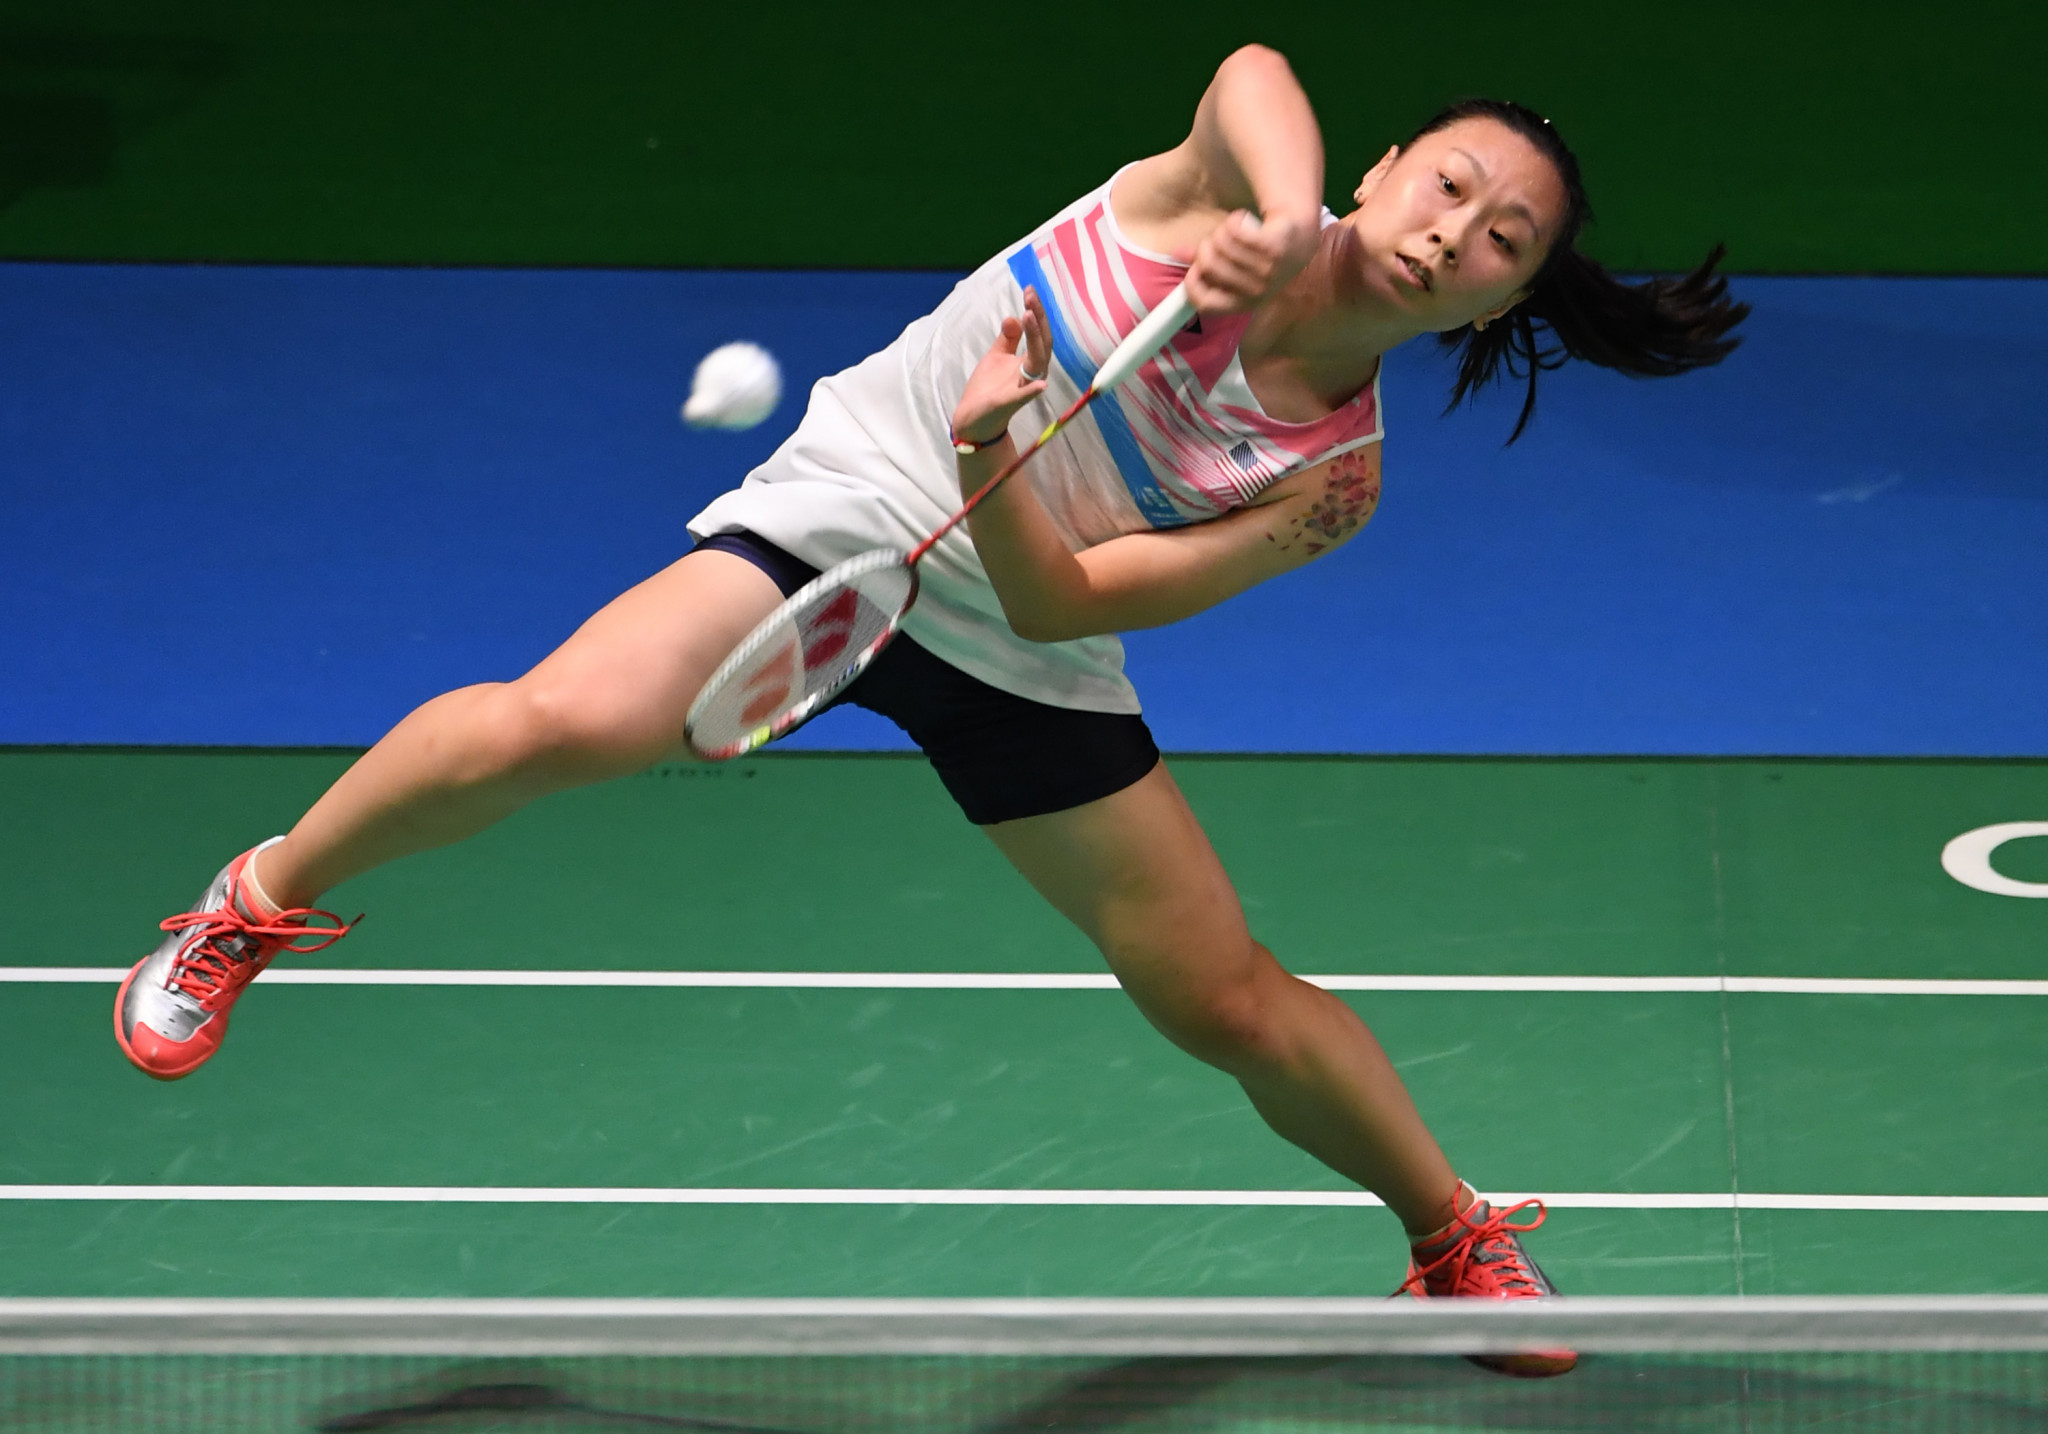 Beiwen Zhang won the women's singles final ©Getty Images